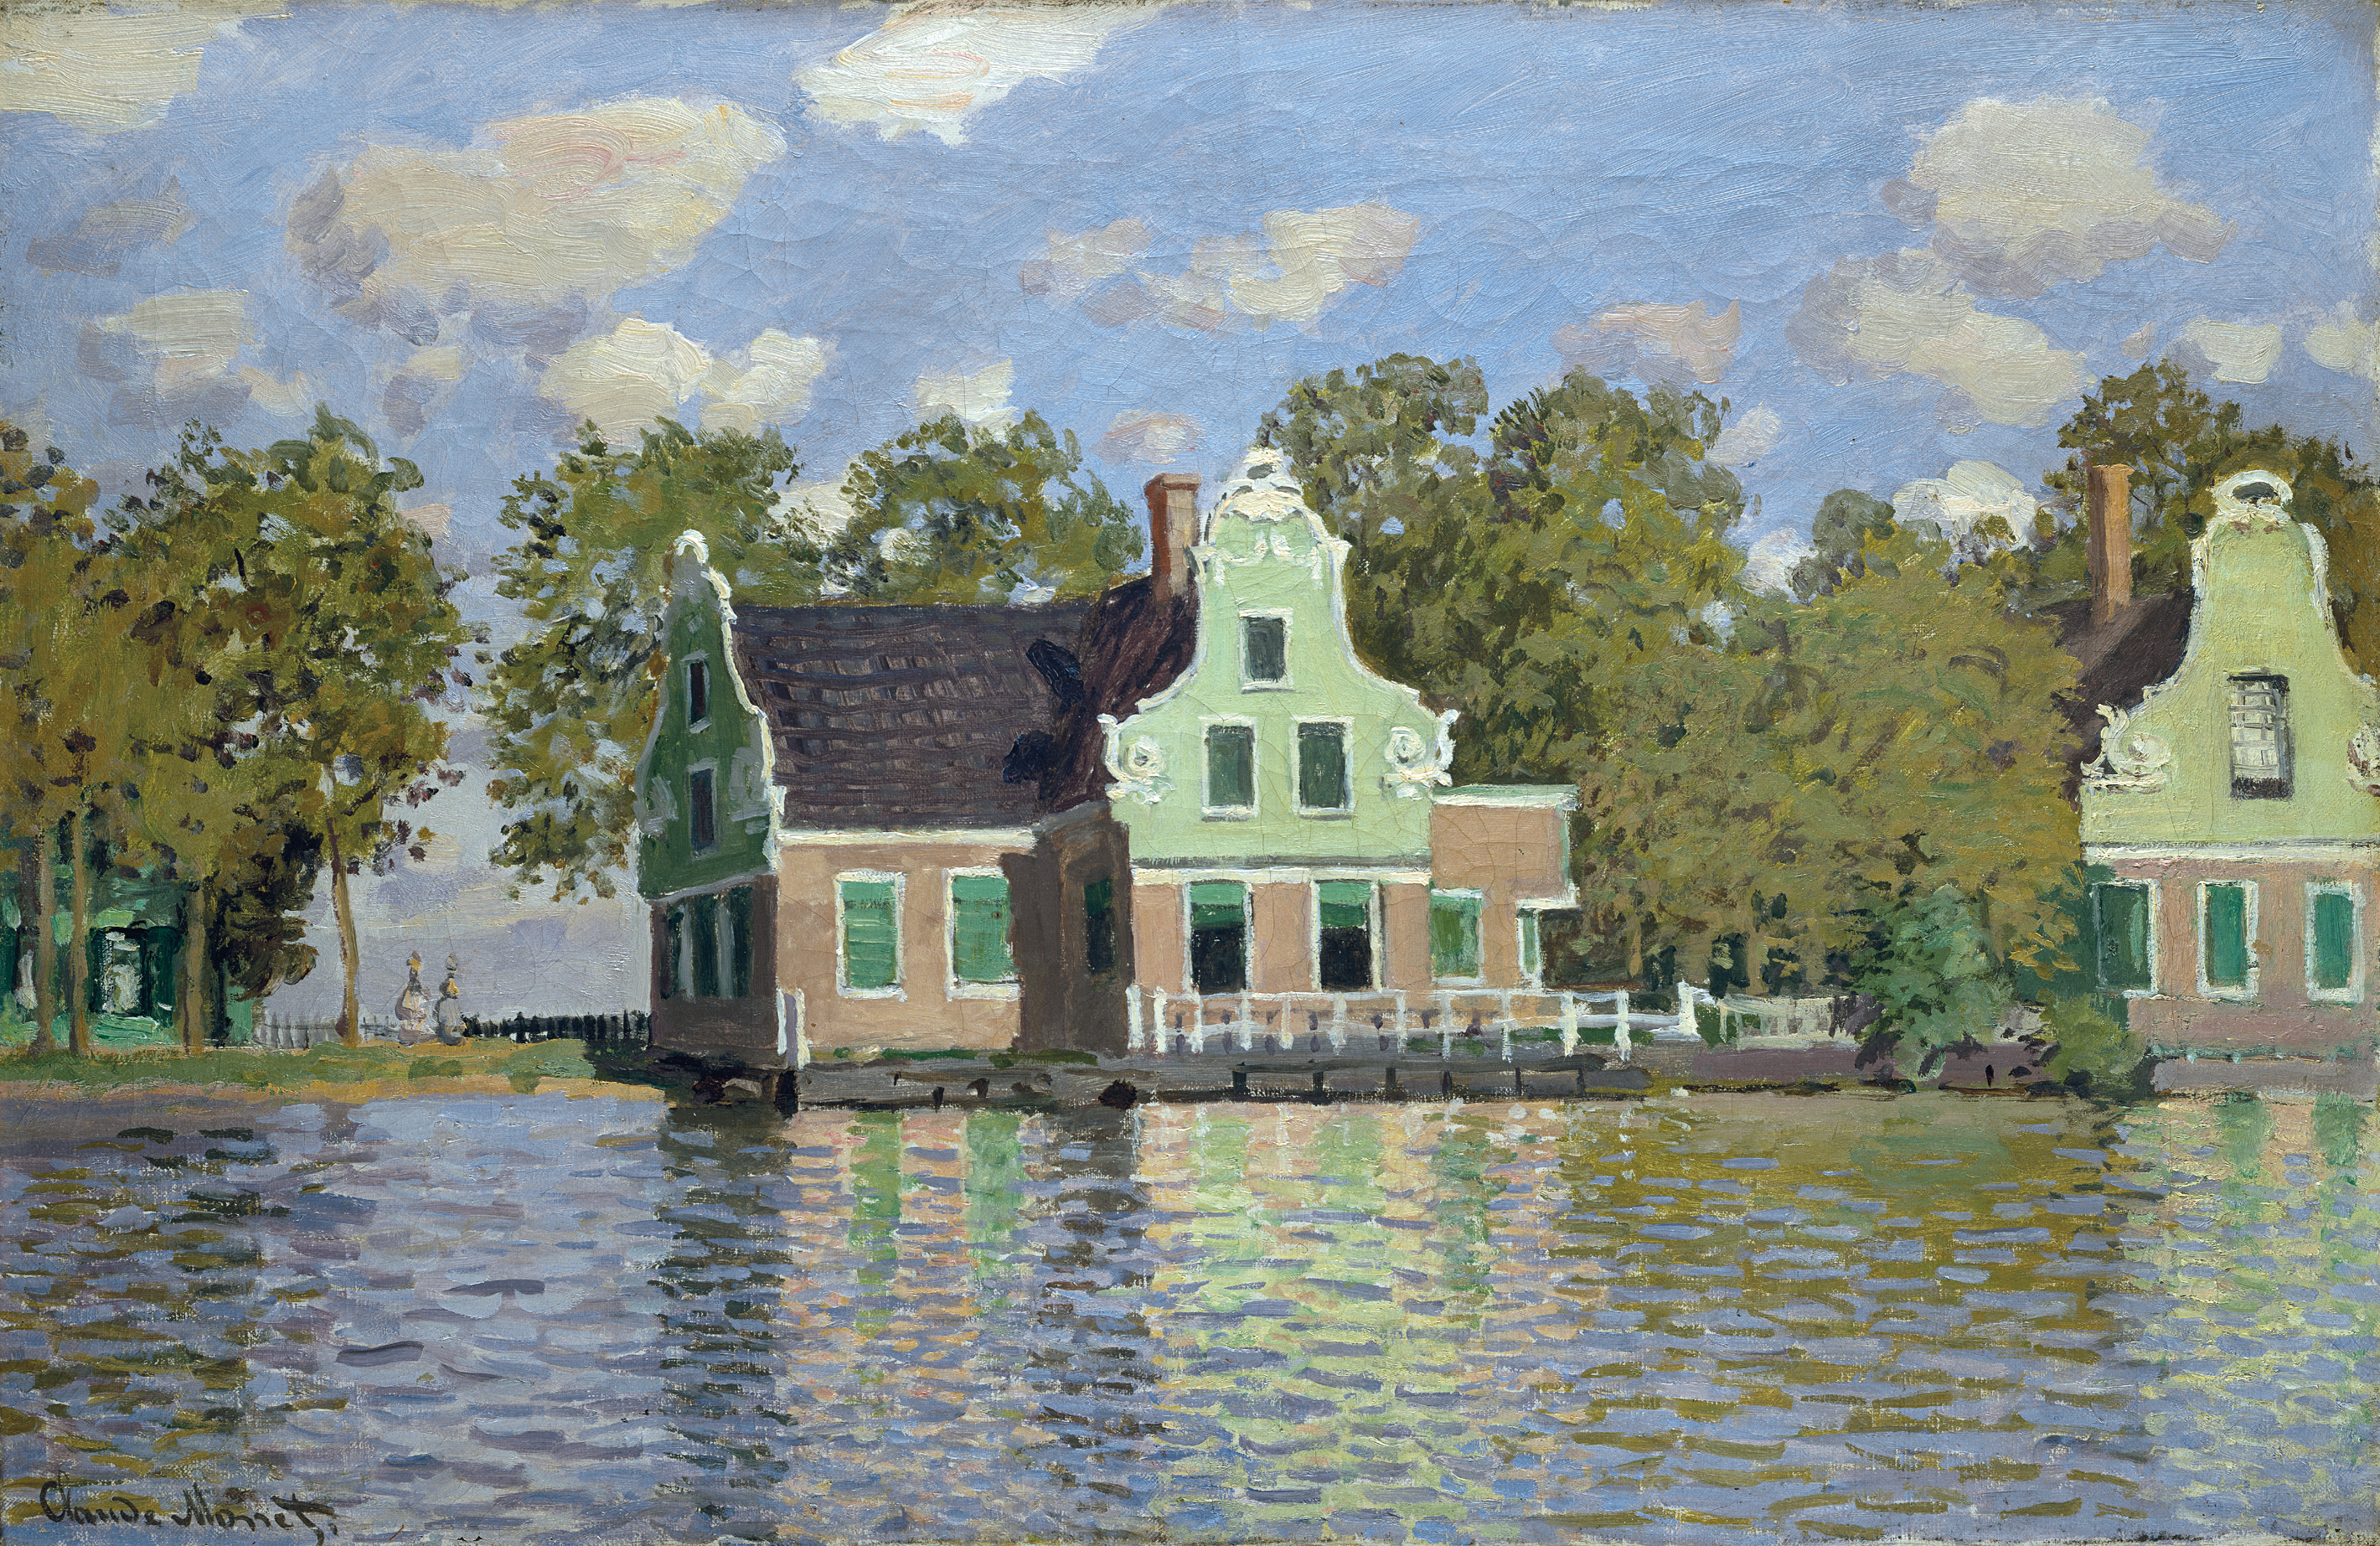 贊恩河畔的房屋 by Claude Monet - 1871年 - 47.7 x 73.7 釐米 